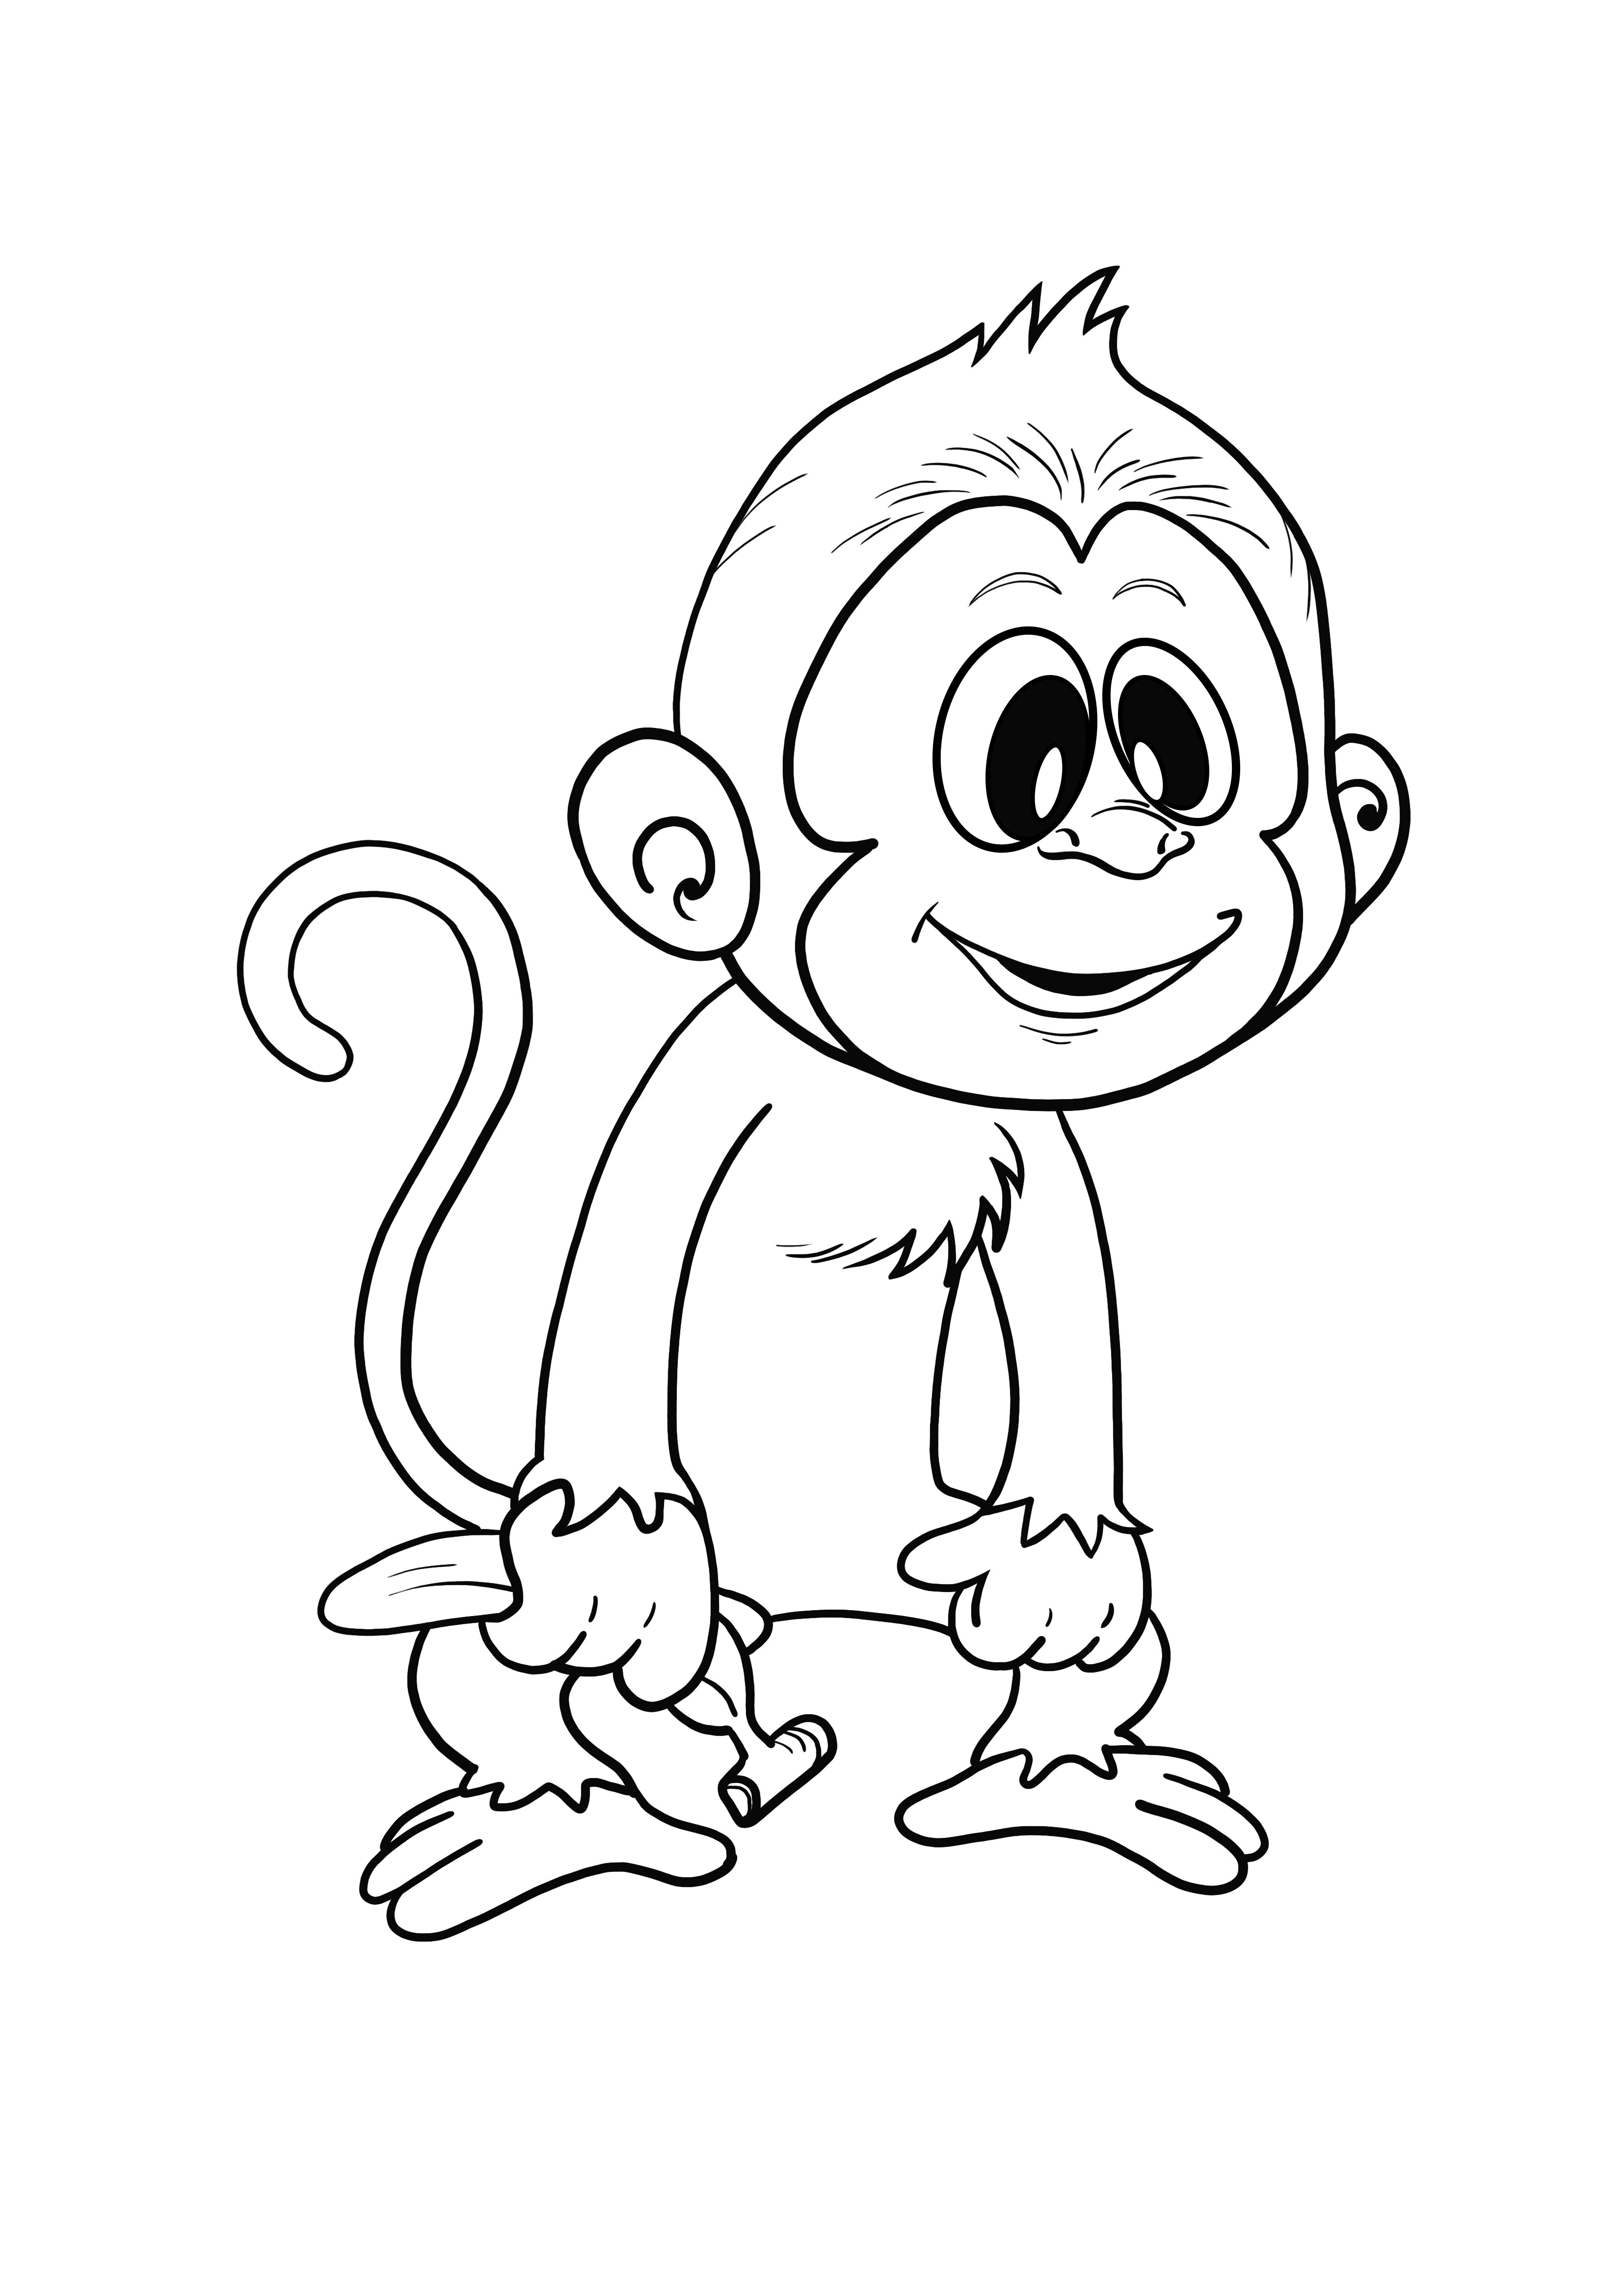 Monyet keren untuk mencetak halaman mewarnai sederhana